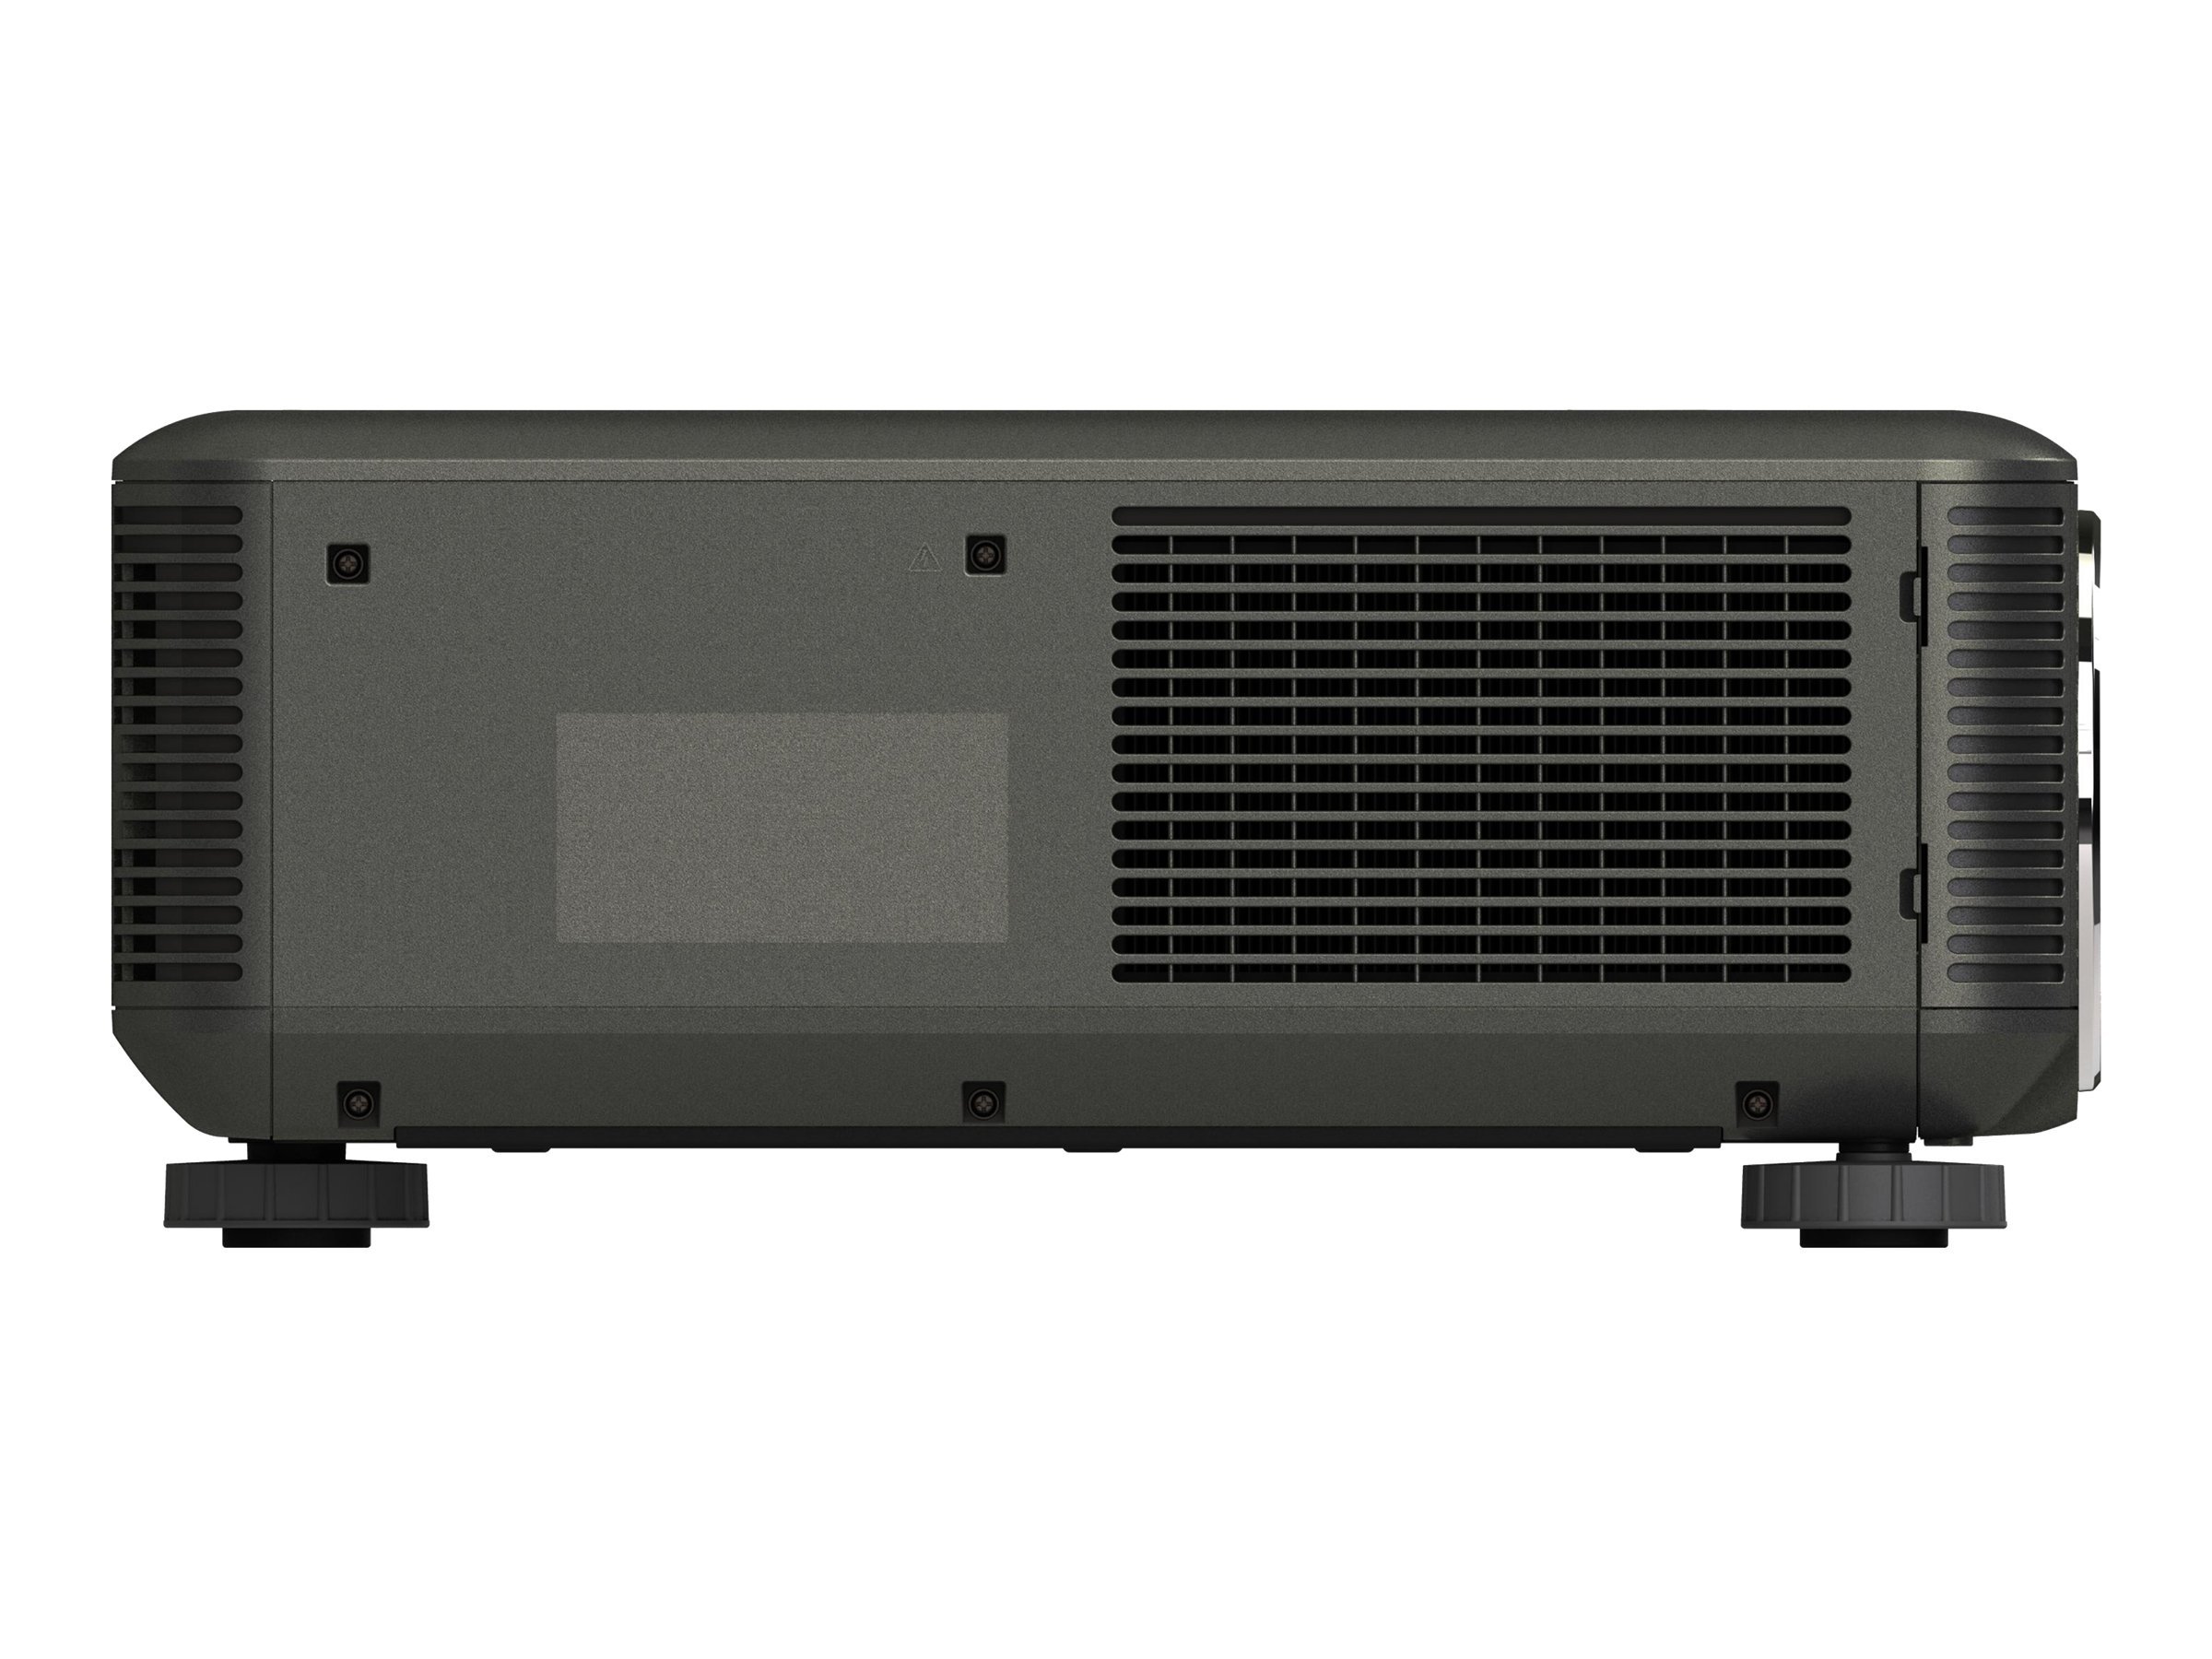 NEC PX700W - Projecteur DLP - 3D - 7000 lumens - WXGA (1280 x 800) - 16:10 - 720p - aucune lentille - 60003183 - Projecteurs DLP